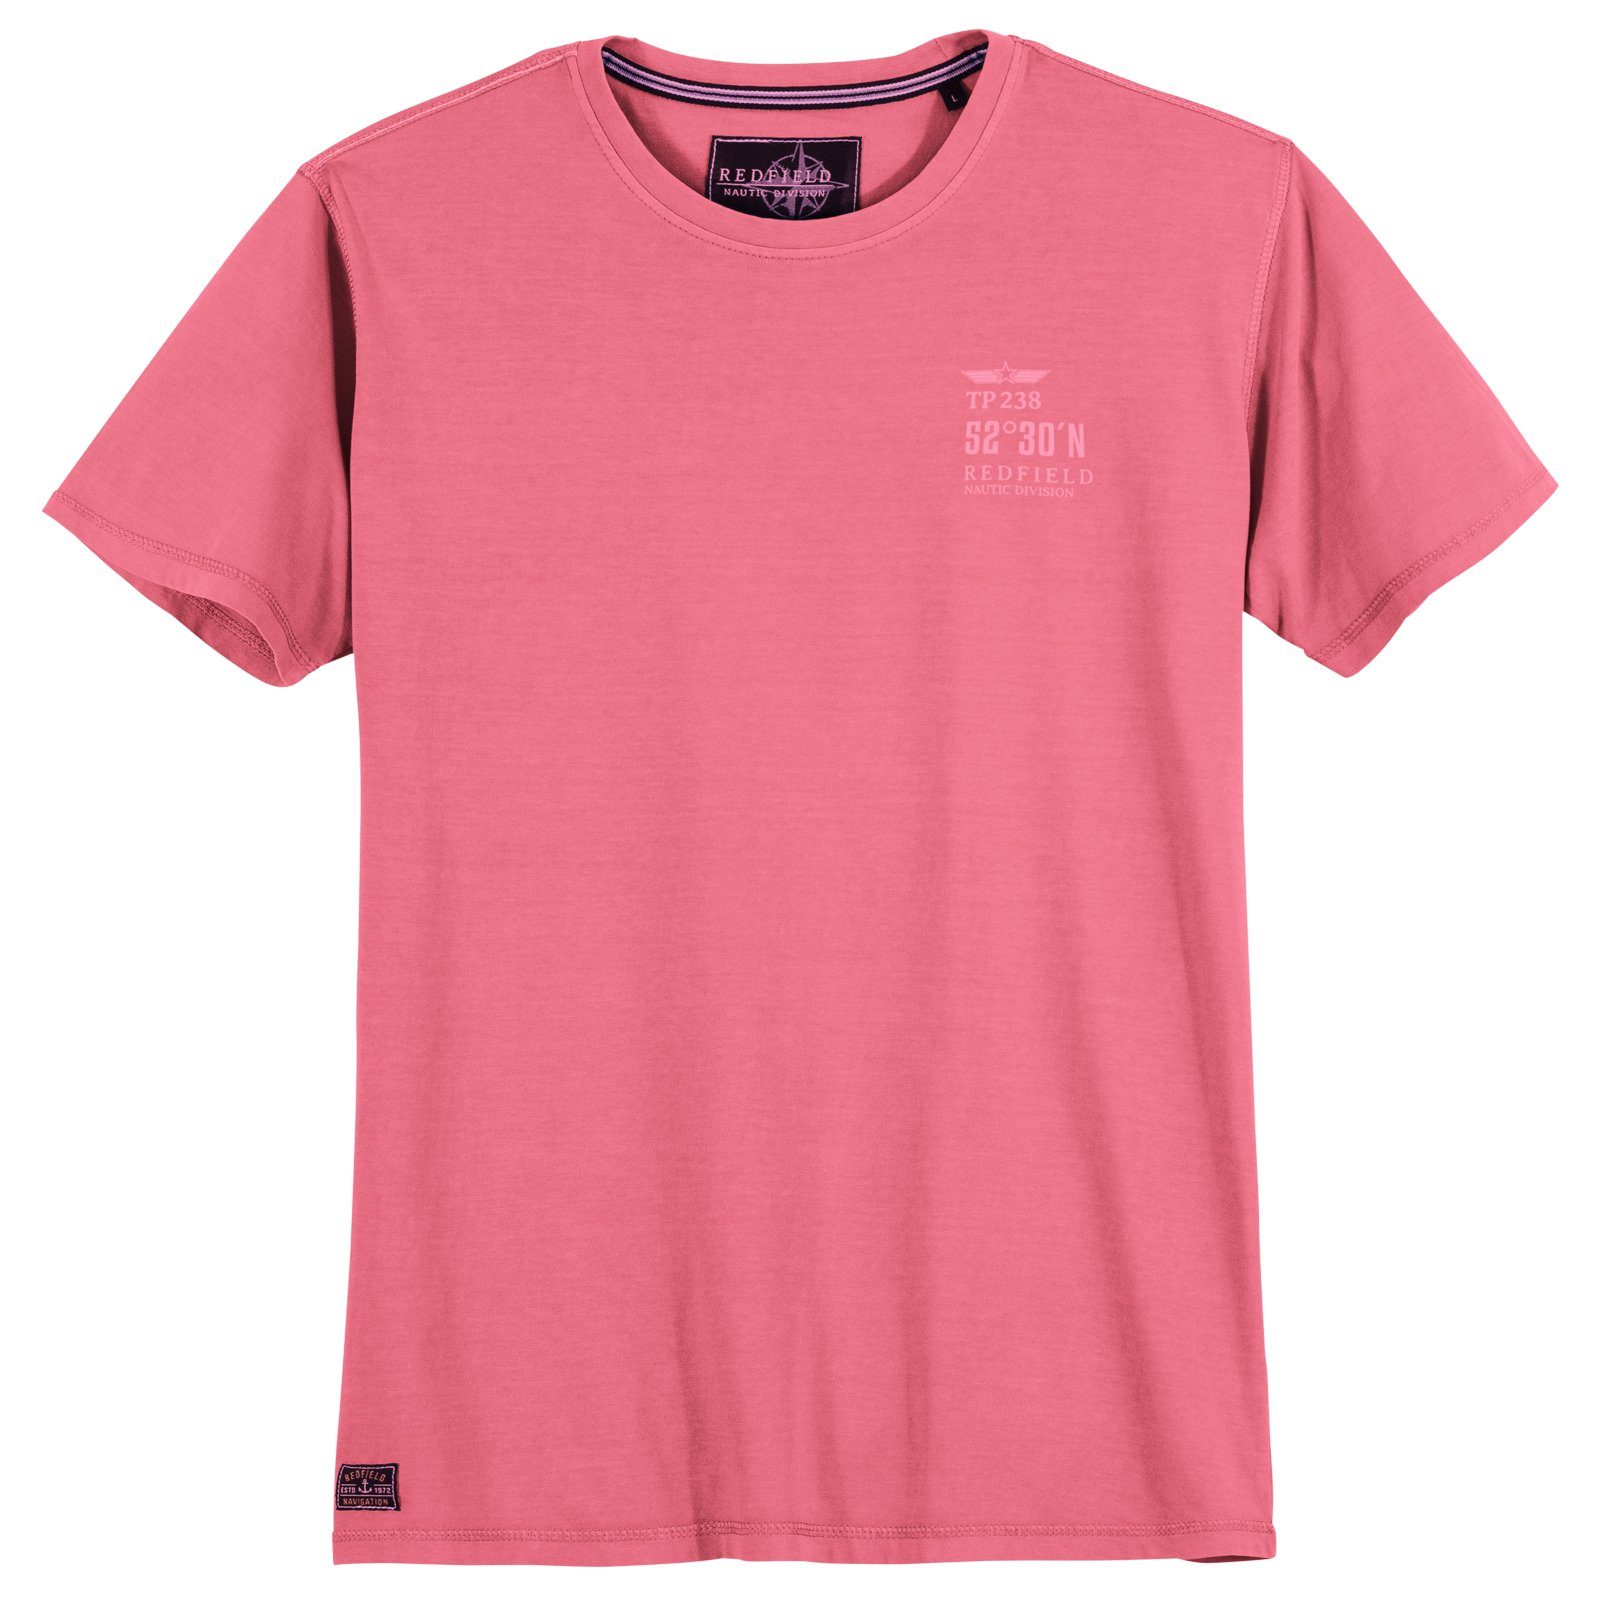 redfield pink T-Shirt Größen Redfield Print-Shirt Herren Vintage Große